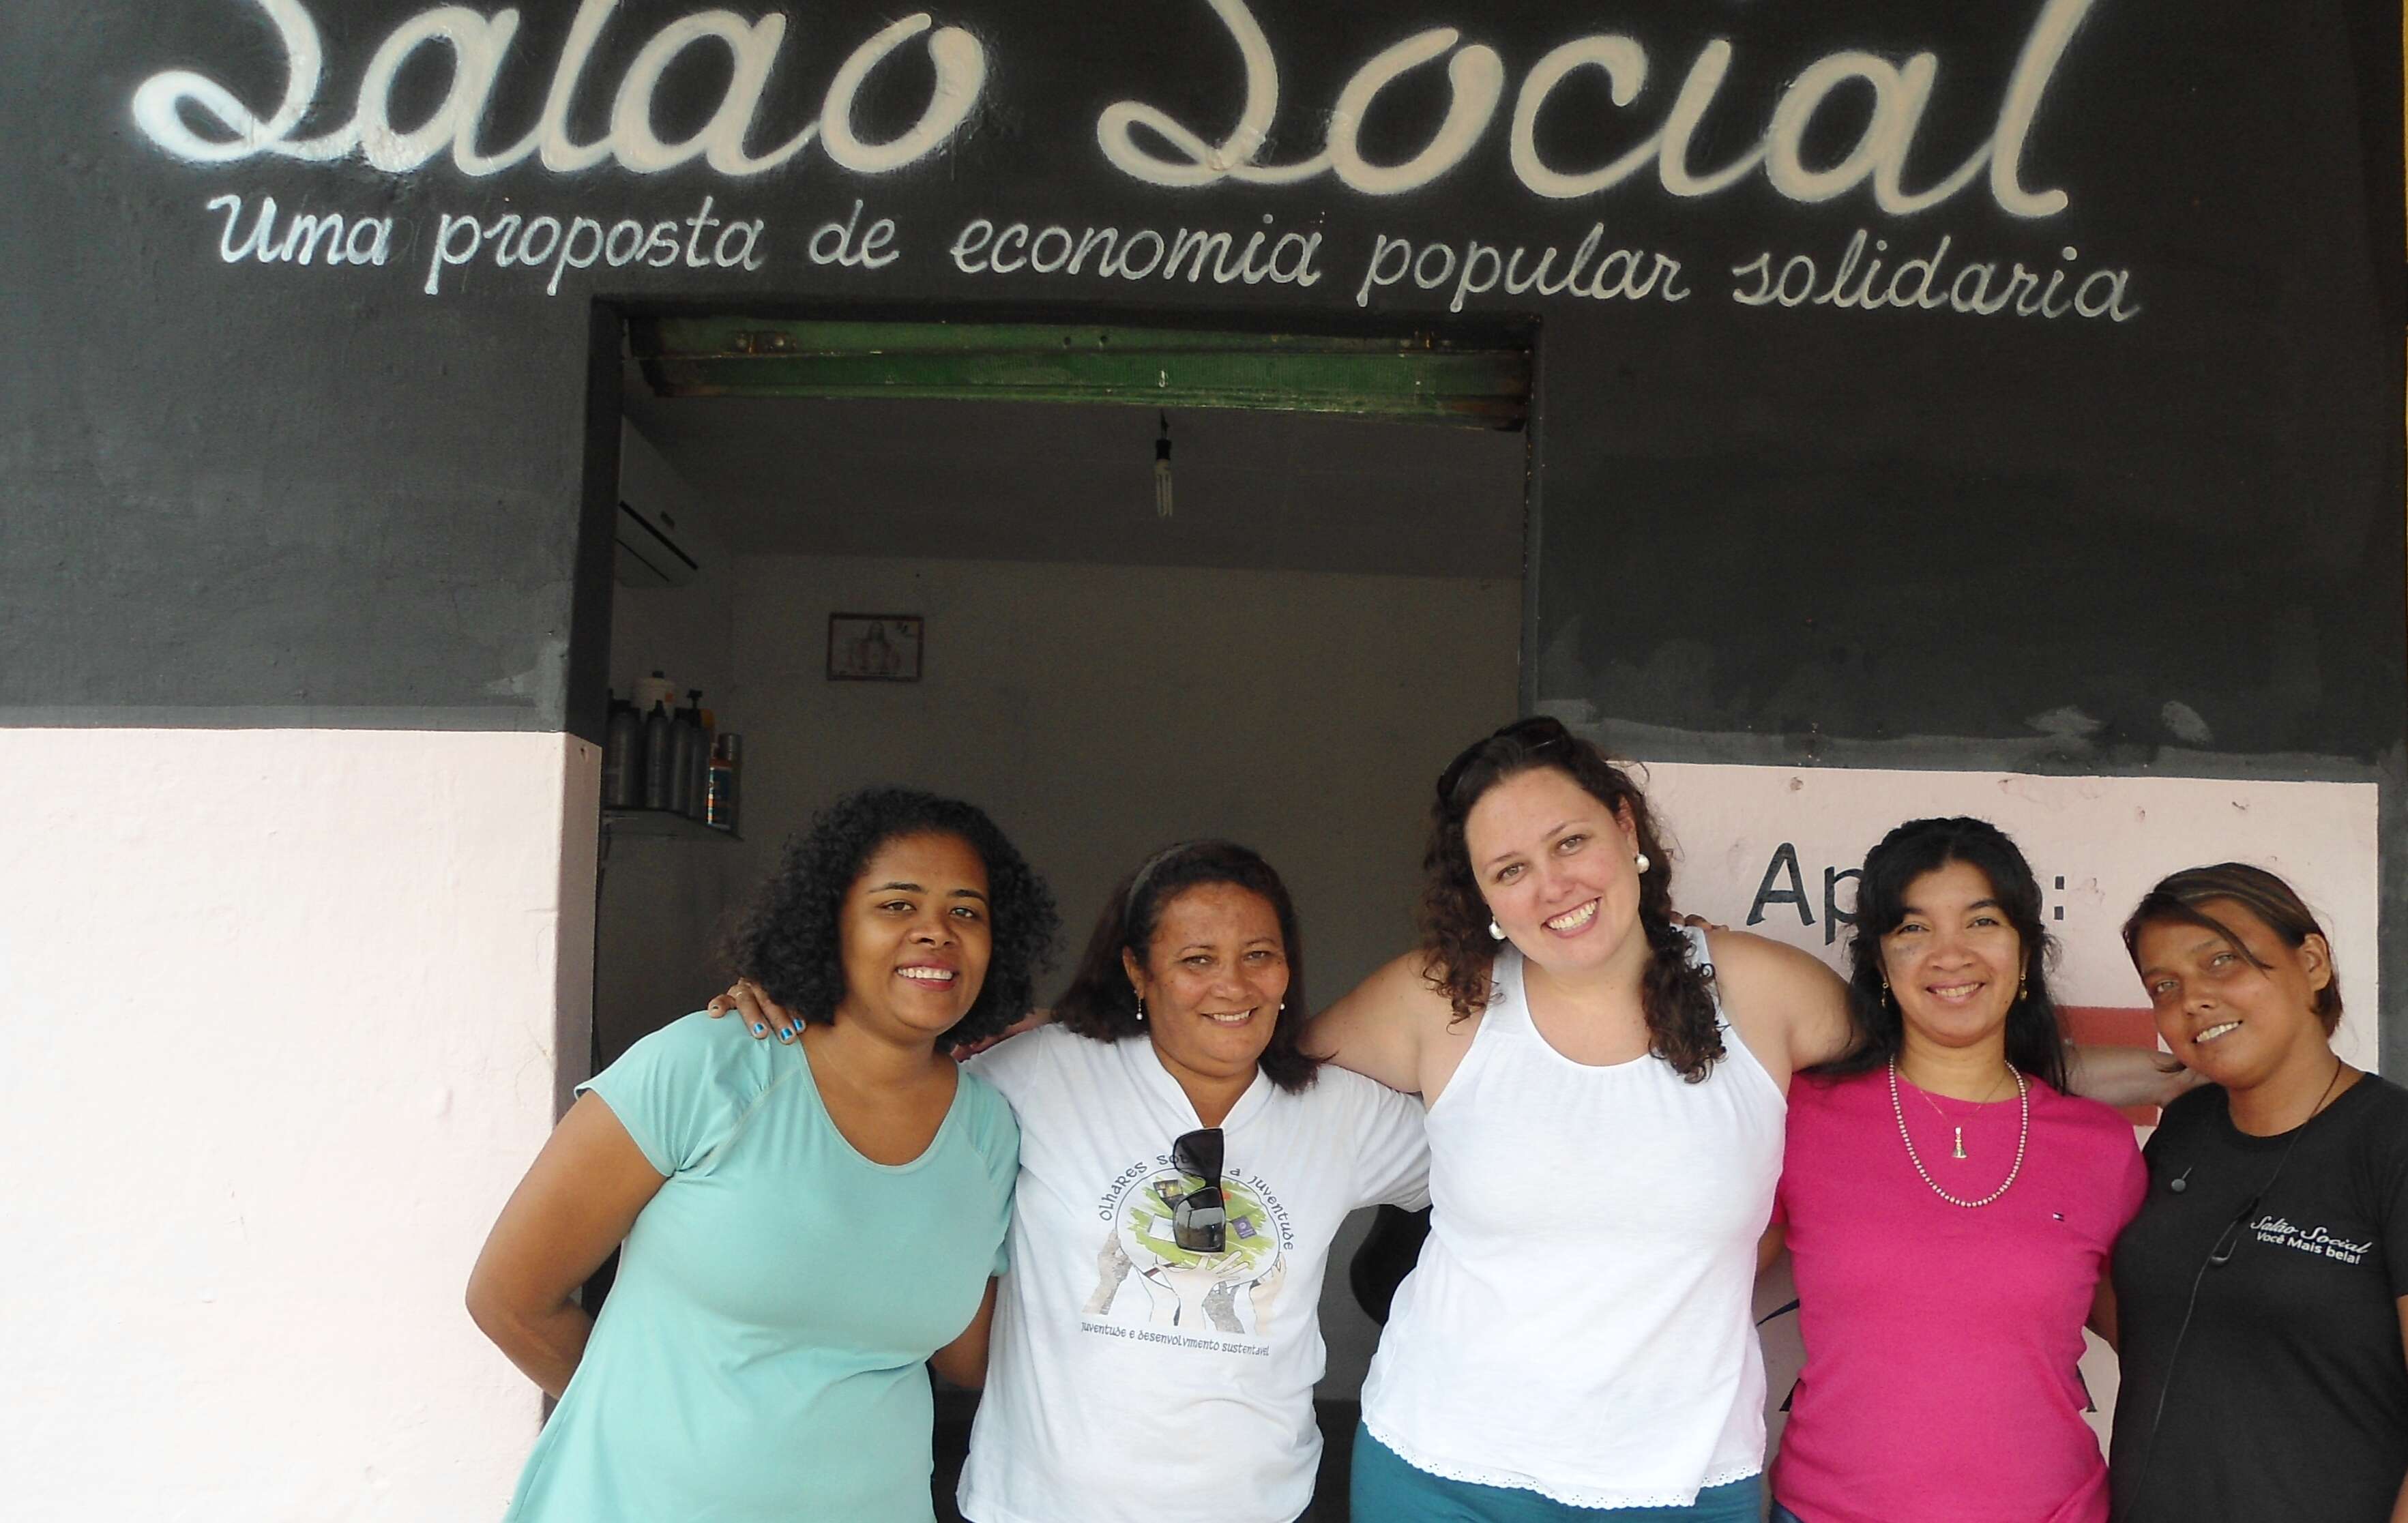 Representantes da Aliança Empreendedora e Santander com as empreendedoras do Salão Social, negócio apoiado pela organização aliada Cáritas Brasileira na regional do Piauí.